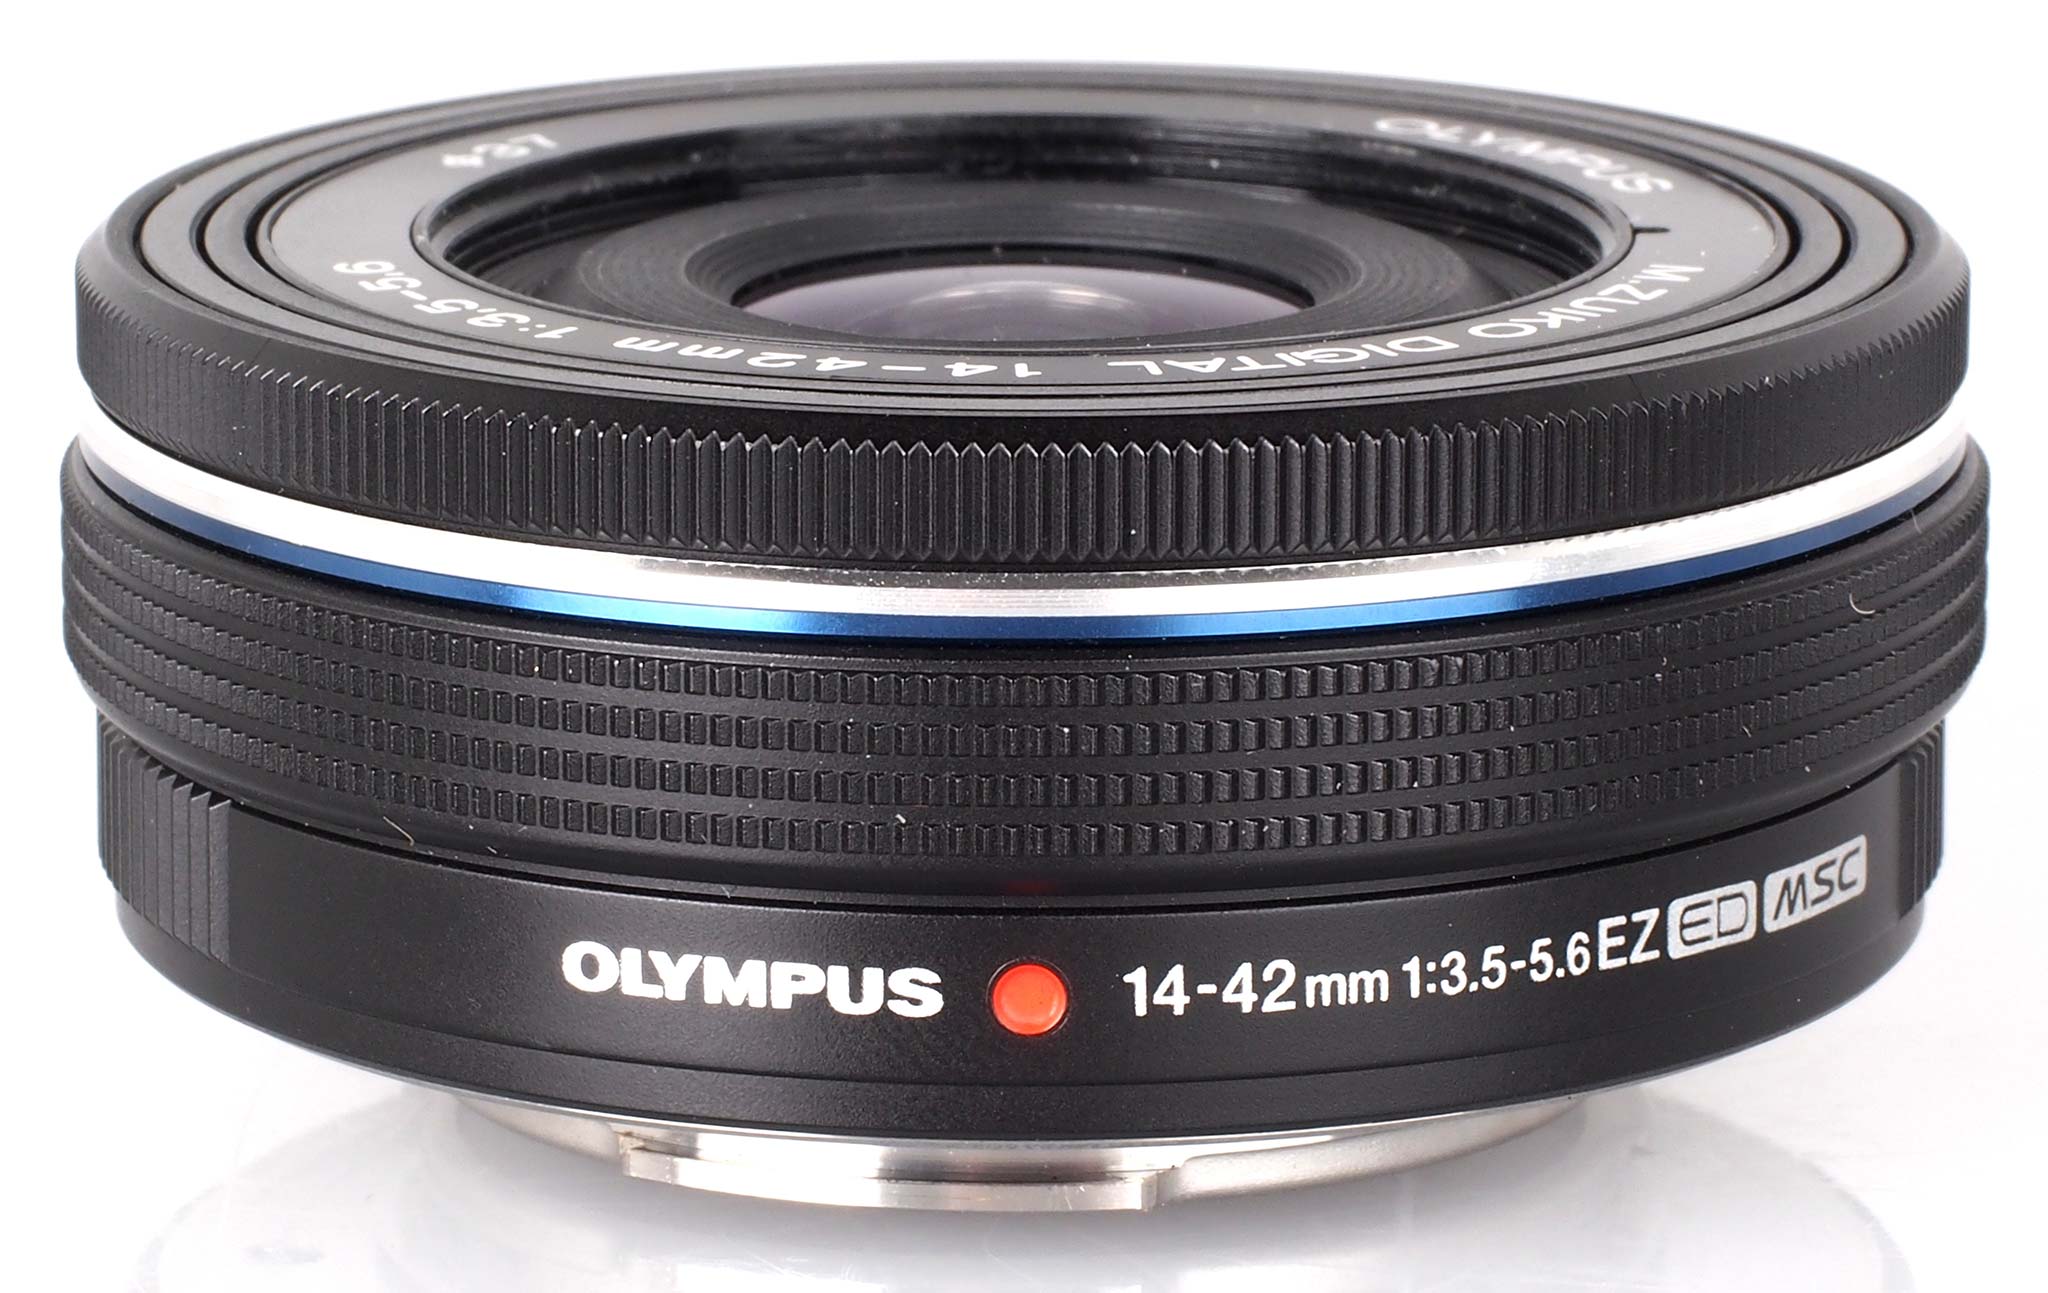 highres-Olympus-M-Zuiko-14-42mm-ED-EZ-MSC-Lens-2_1393338488.jpg